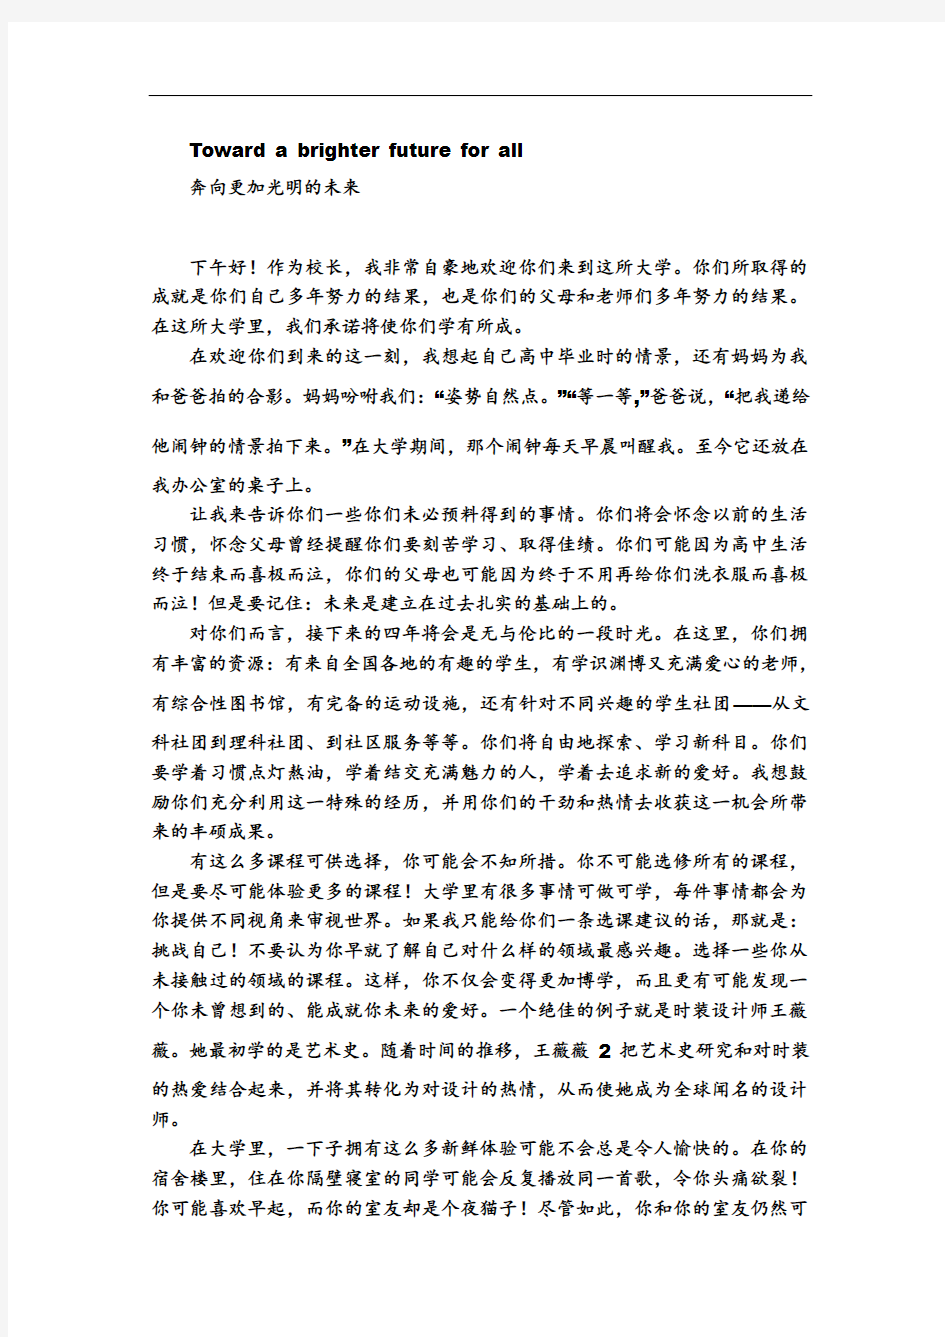 新视野一 第一单元 原文与翻译 汉语翻译版